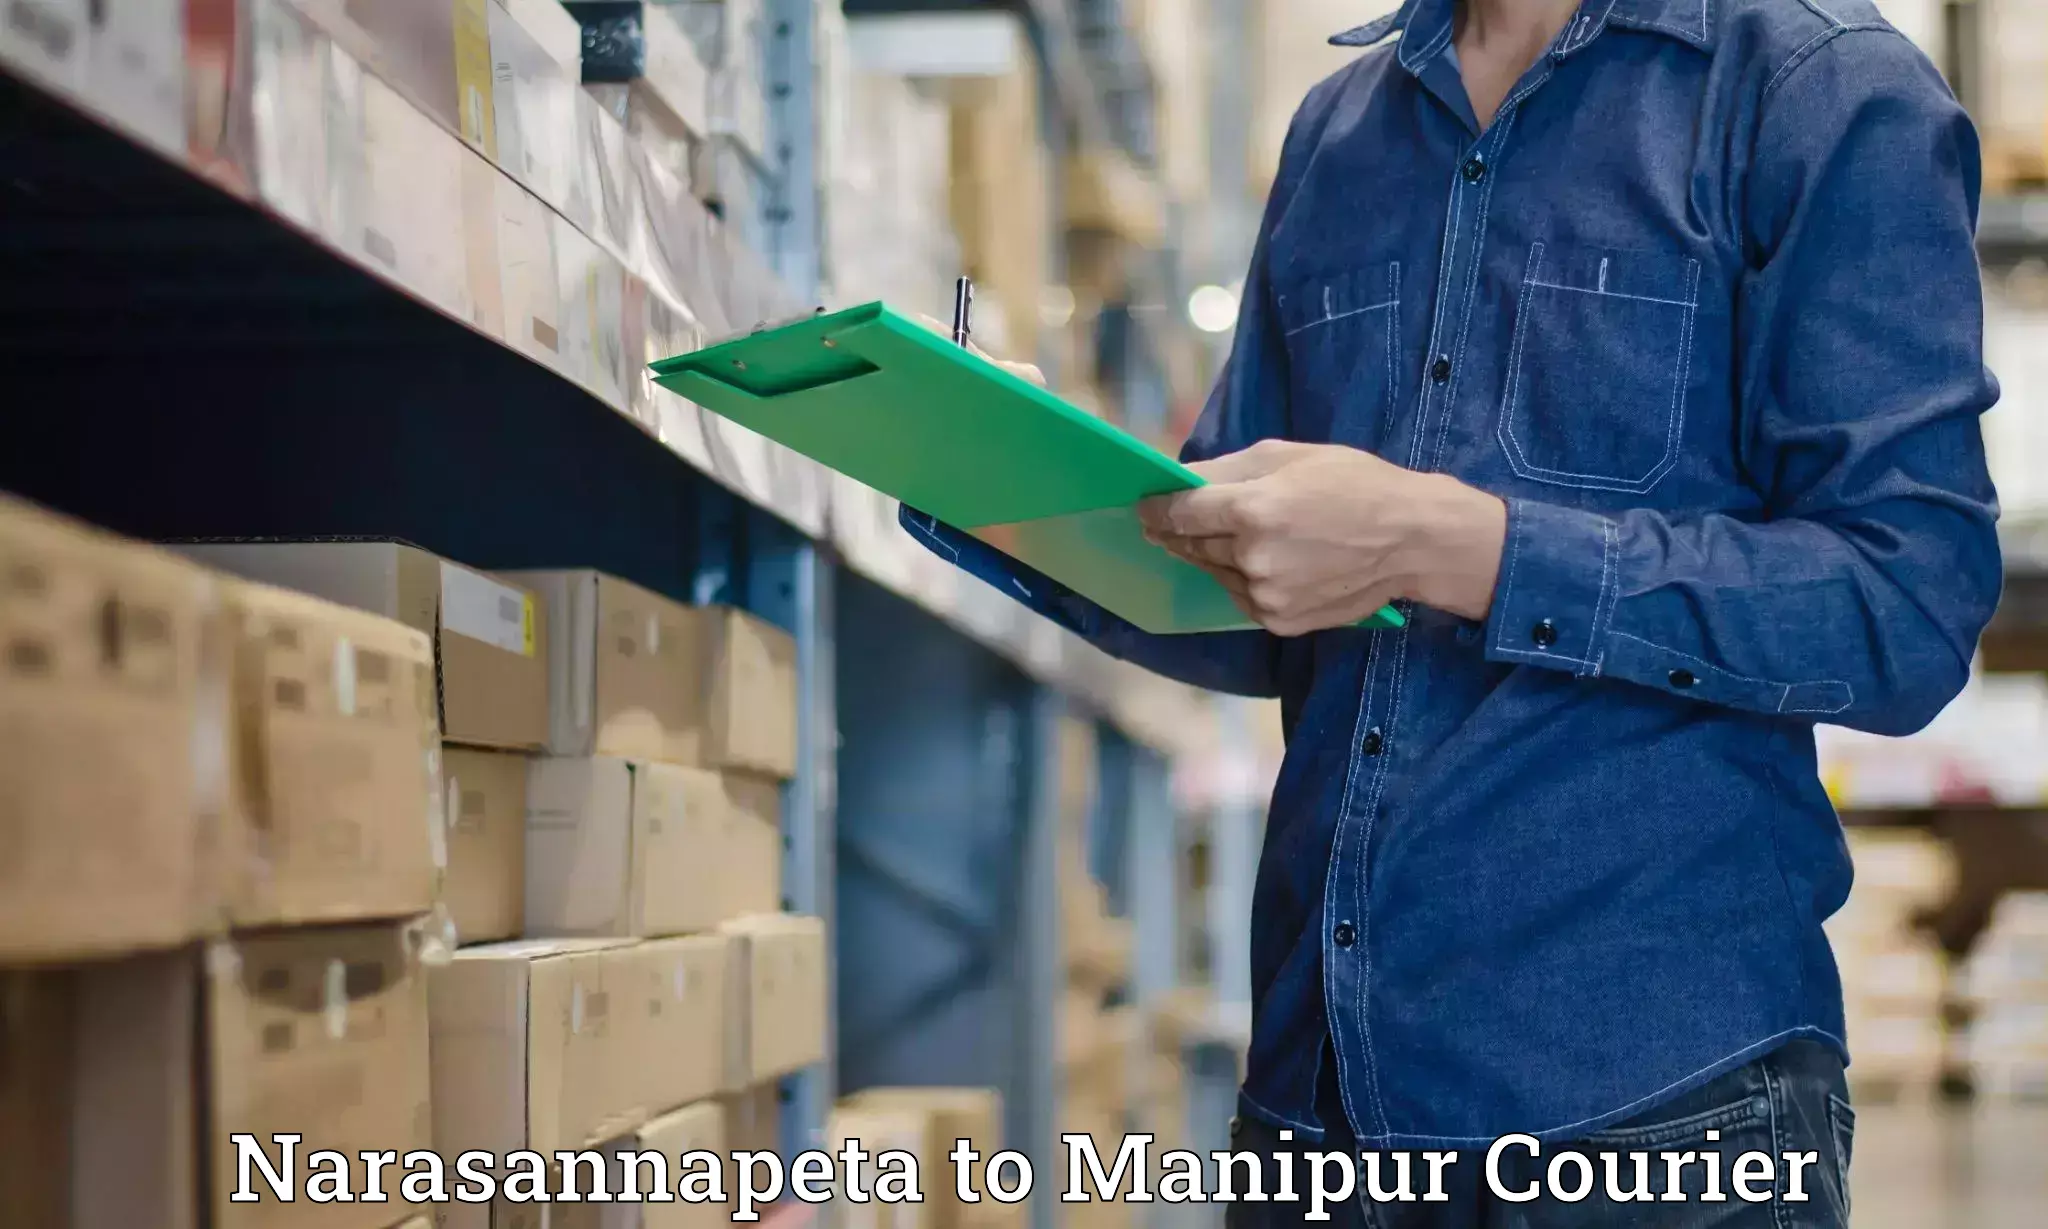 Cash on delivery service Narasannapeta to Senapati